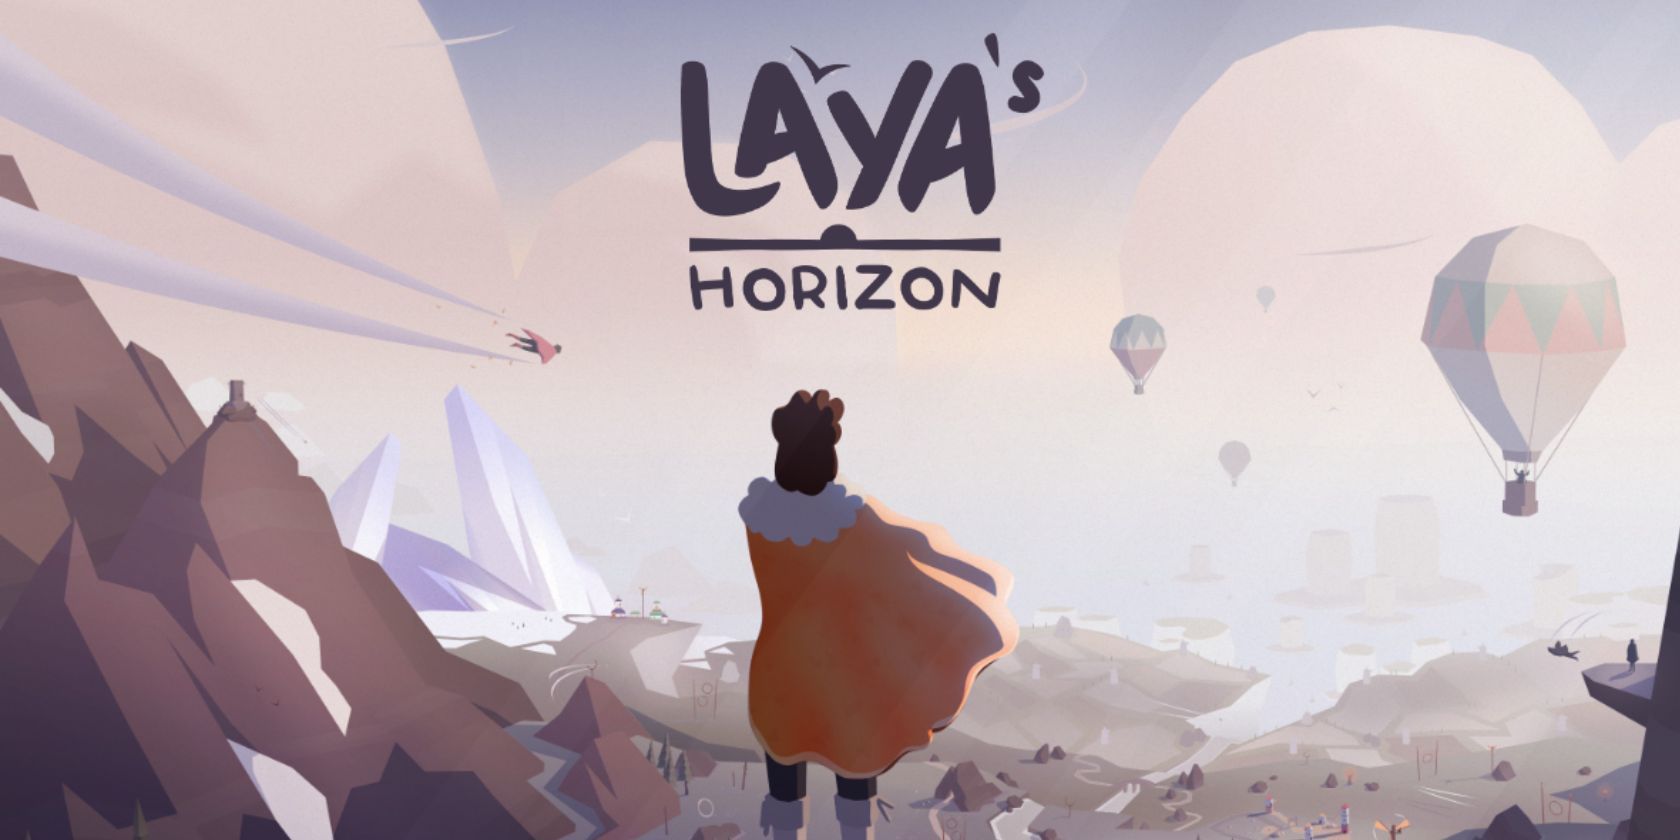 layas-horizon-hero